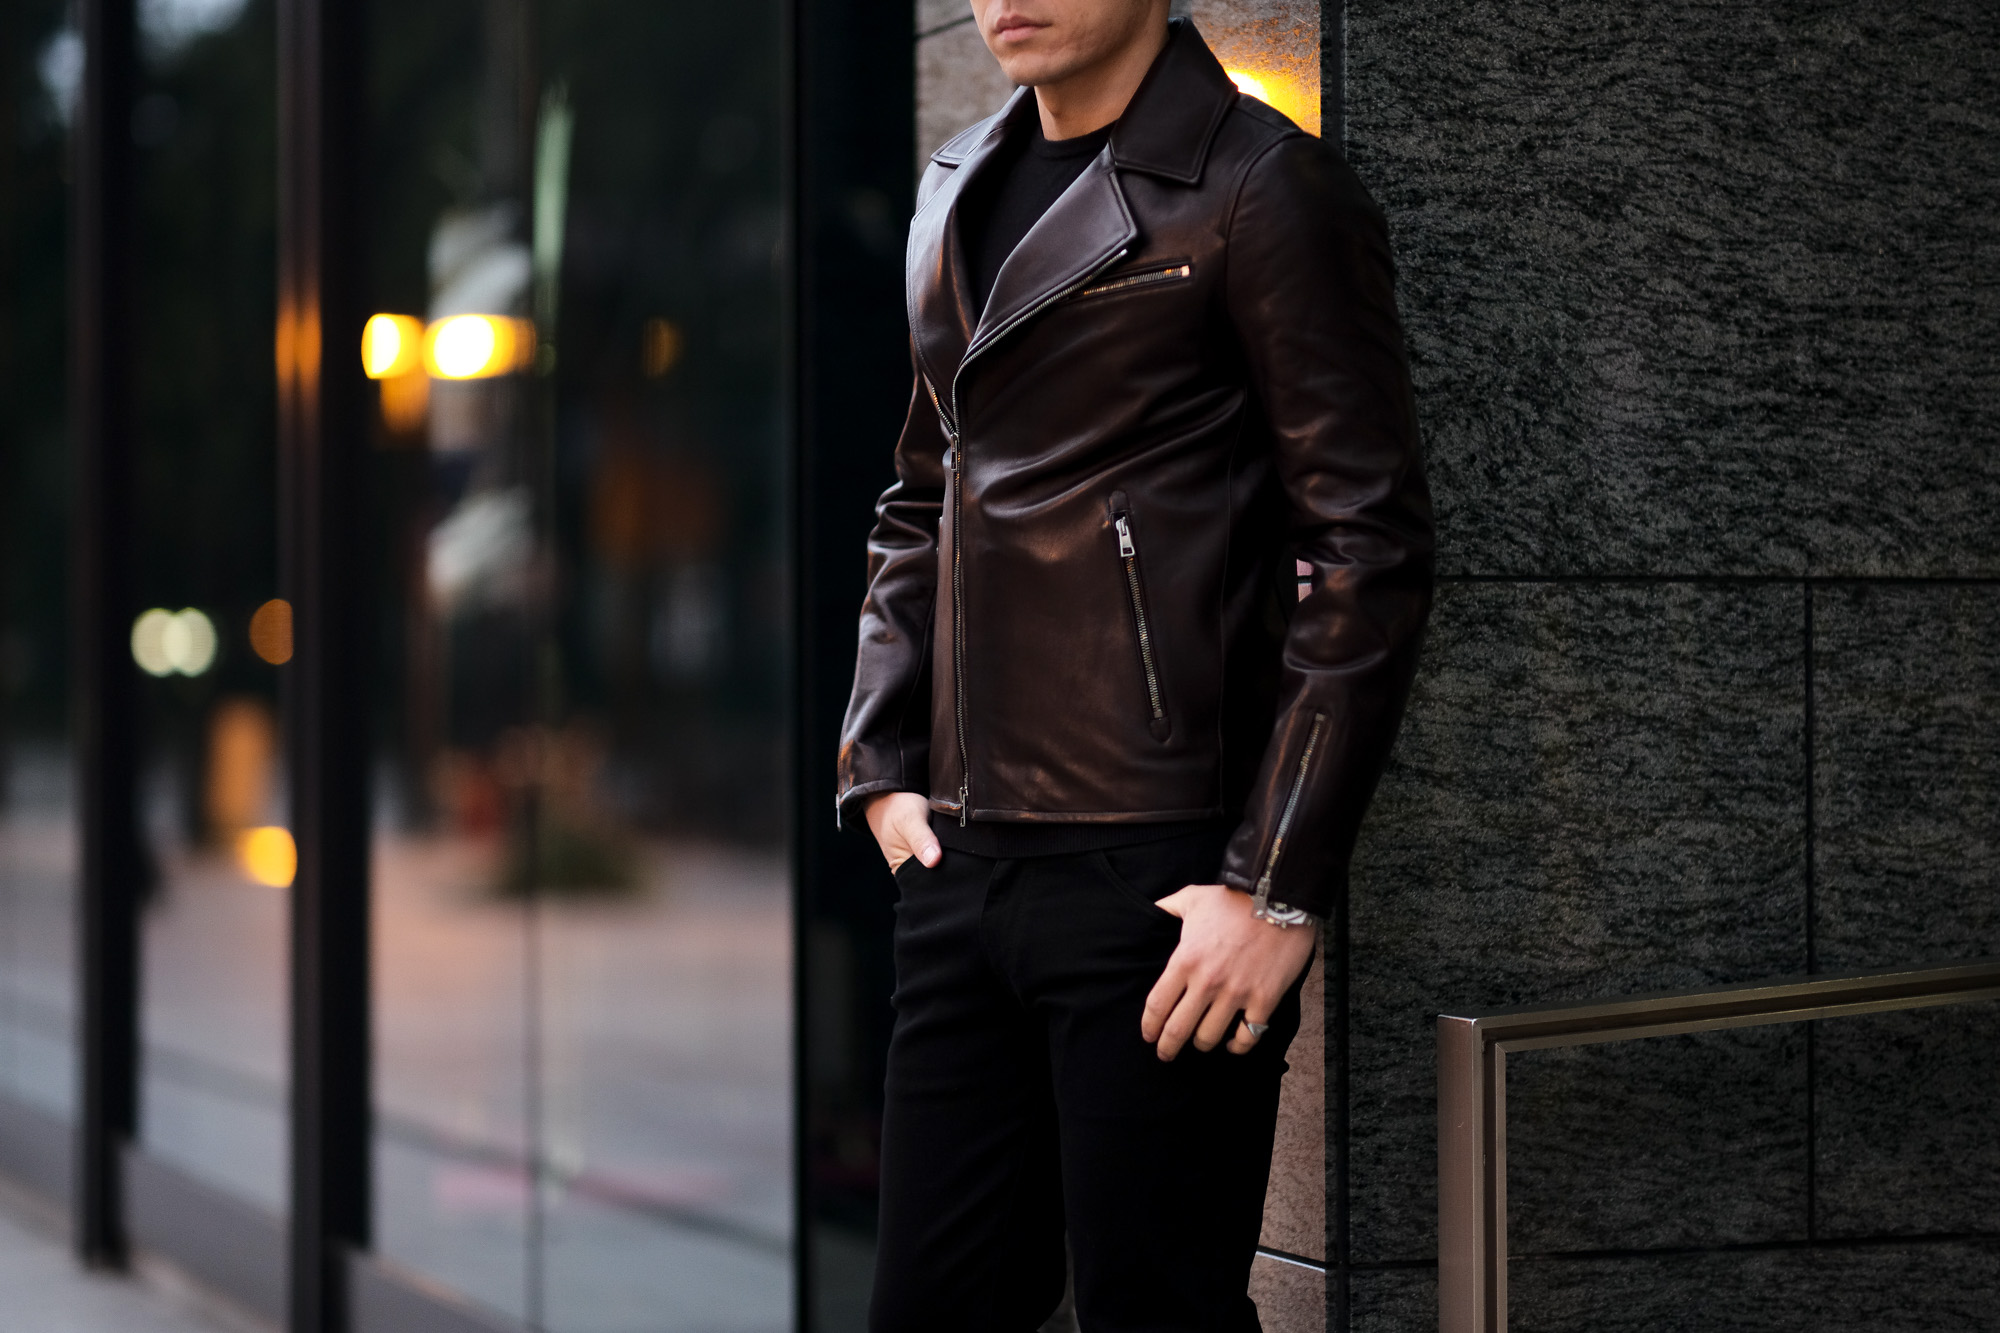 MOLEC (モレック) Double Leather Jacket (ダブル レザージャケット) PLONGE Lambskin プロンジェラムレザー  ダブル ライダース ジャケット NERO (ブラック) Made in italy (イタリア製) 2021 【ご予約受付中】 –  正規通販・名古屋のメンズセレクトショップ Alto e Diritto